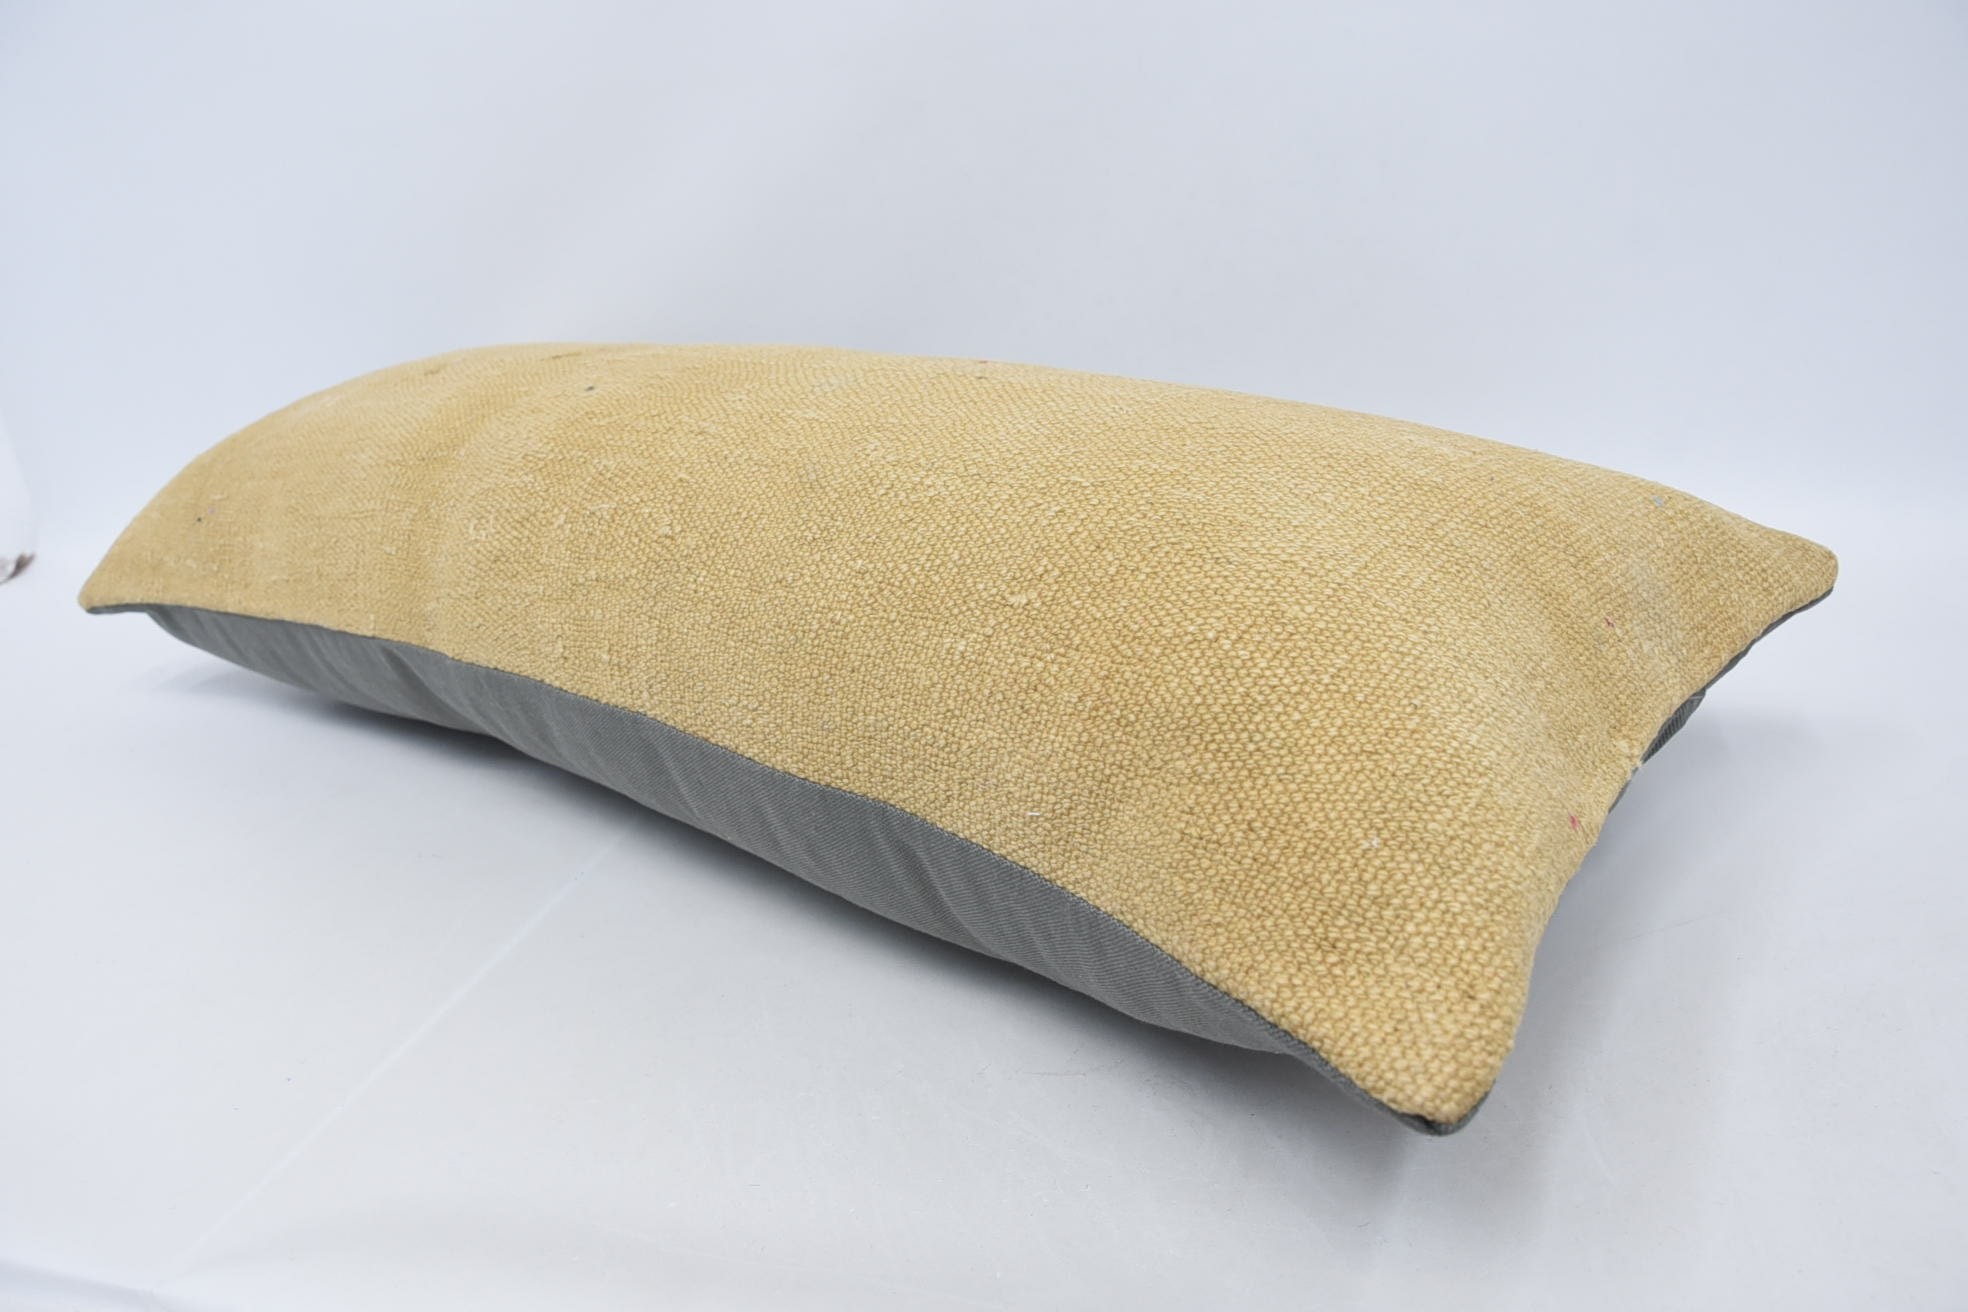 Throw Kilim Pillow, 16"x36" Beige Pillow Case, Retro Throw Pillow, Kilim Pillow, Sofa Bolster Cushion Case, Pillow for Sofa